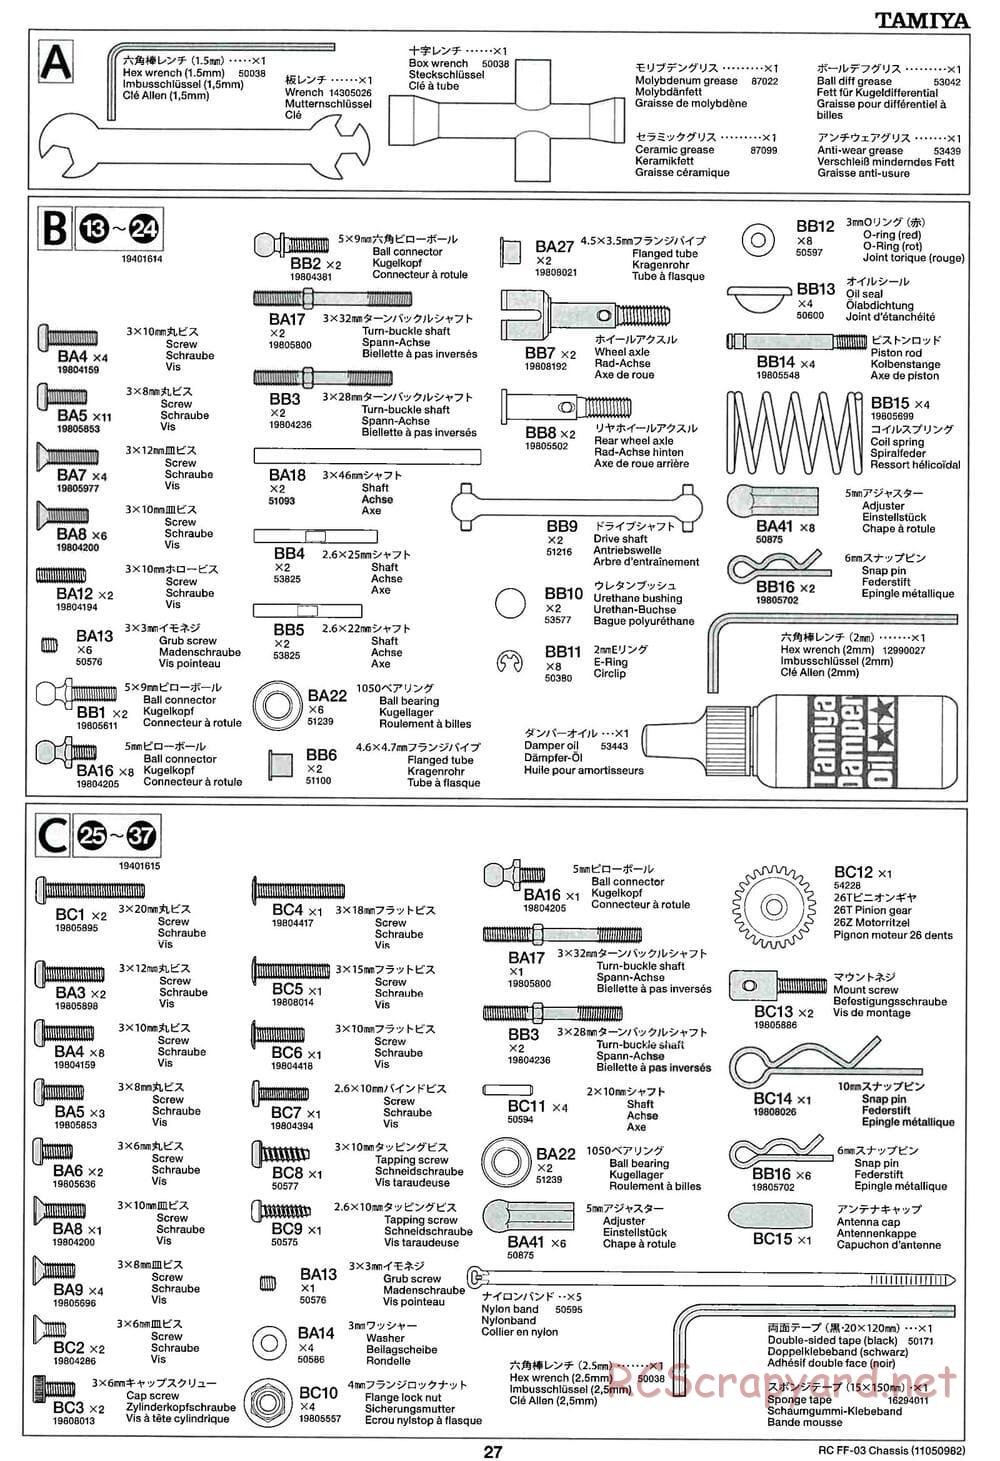 Tamiya - Honda CR-Z - FF-03 Chassis - Manual - Page 27